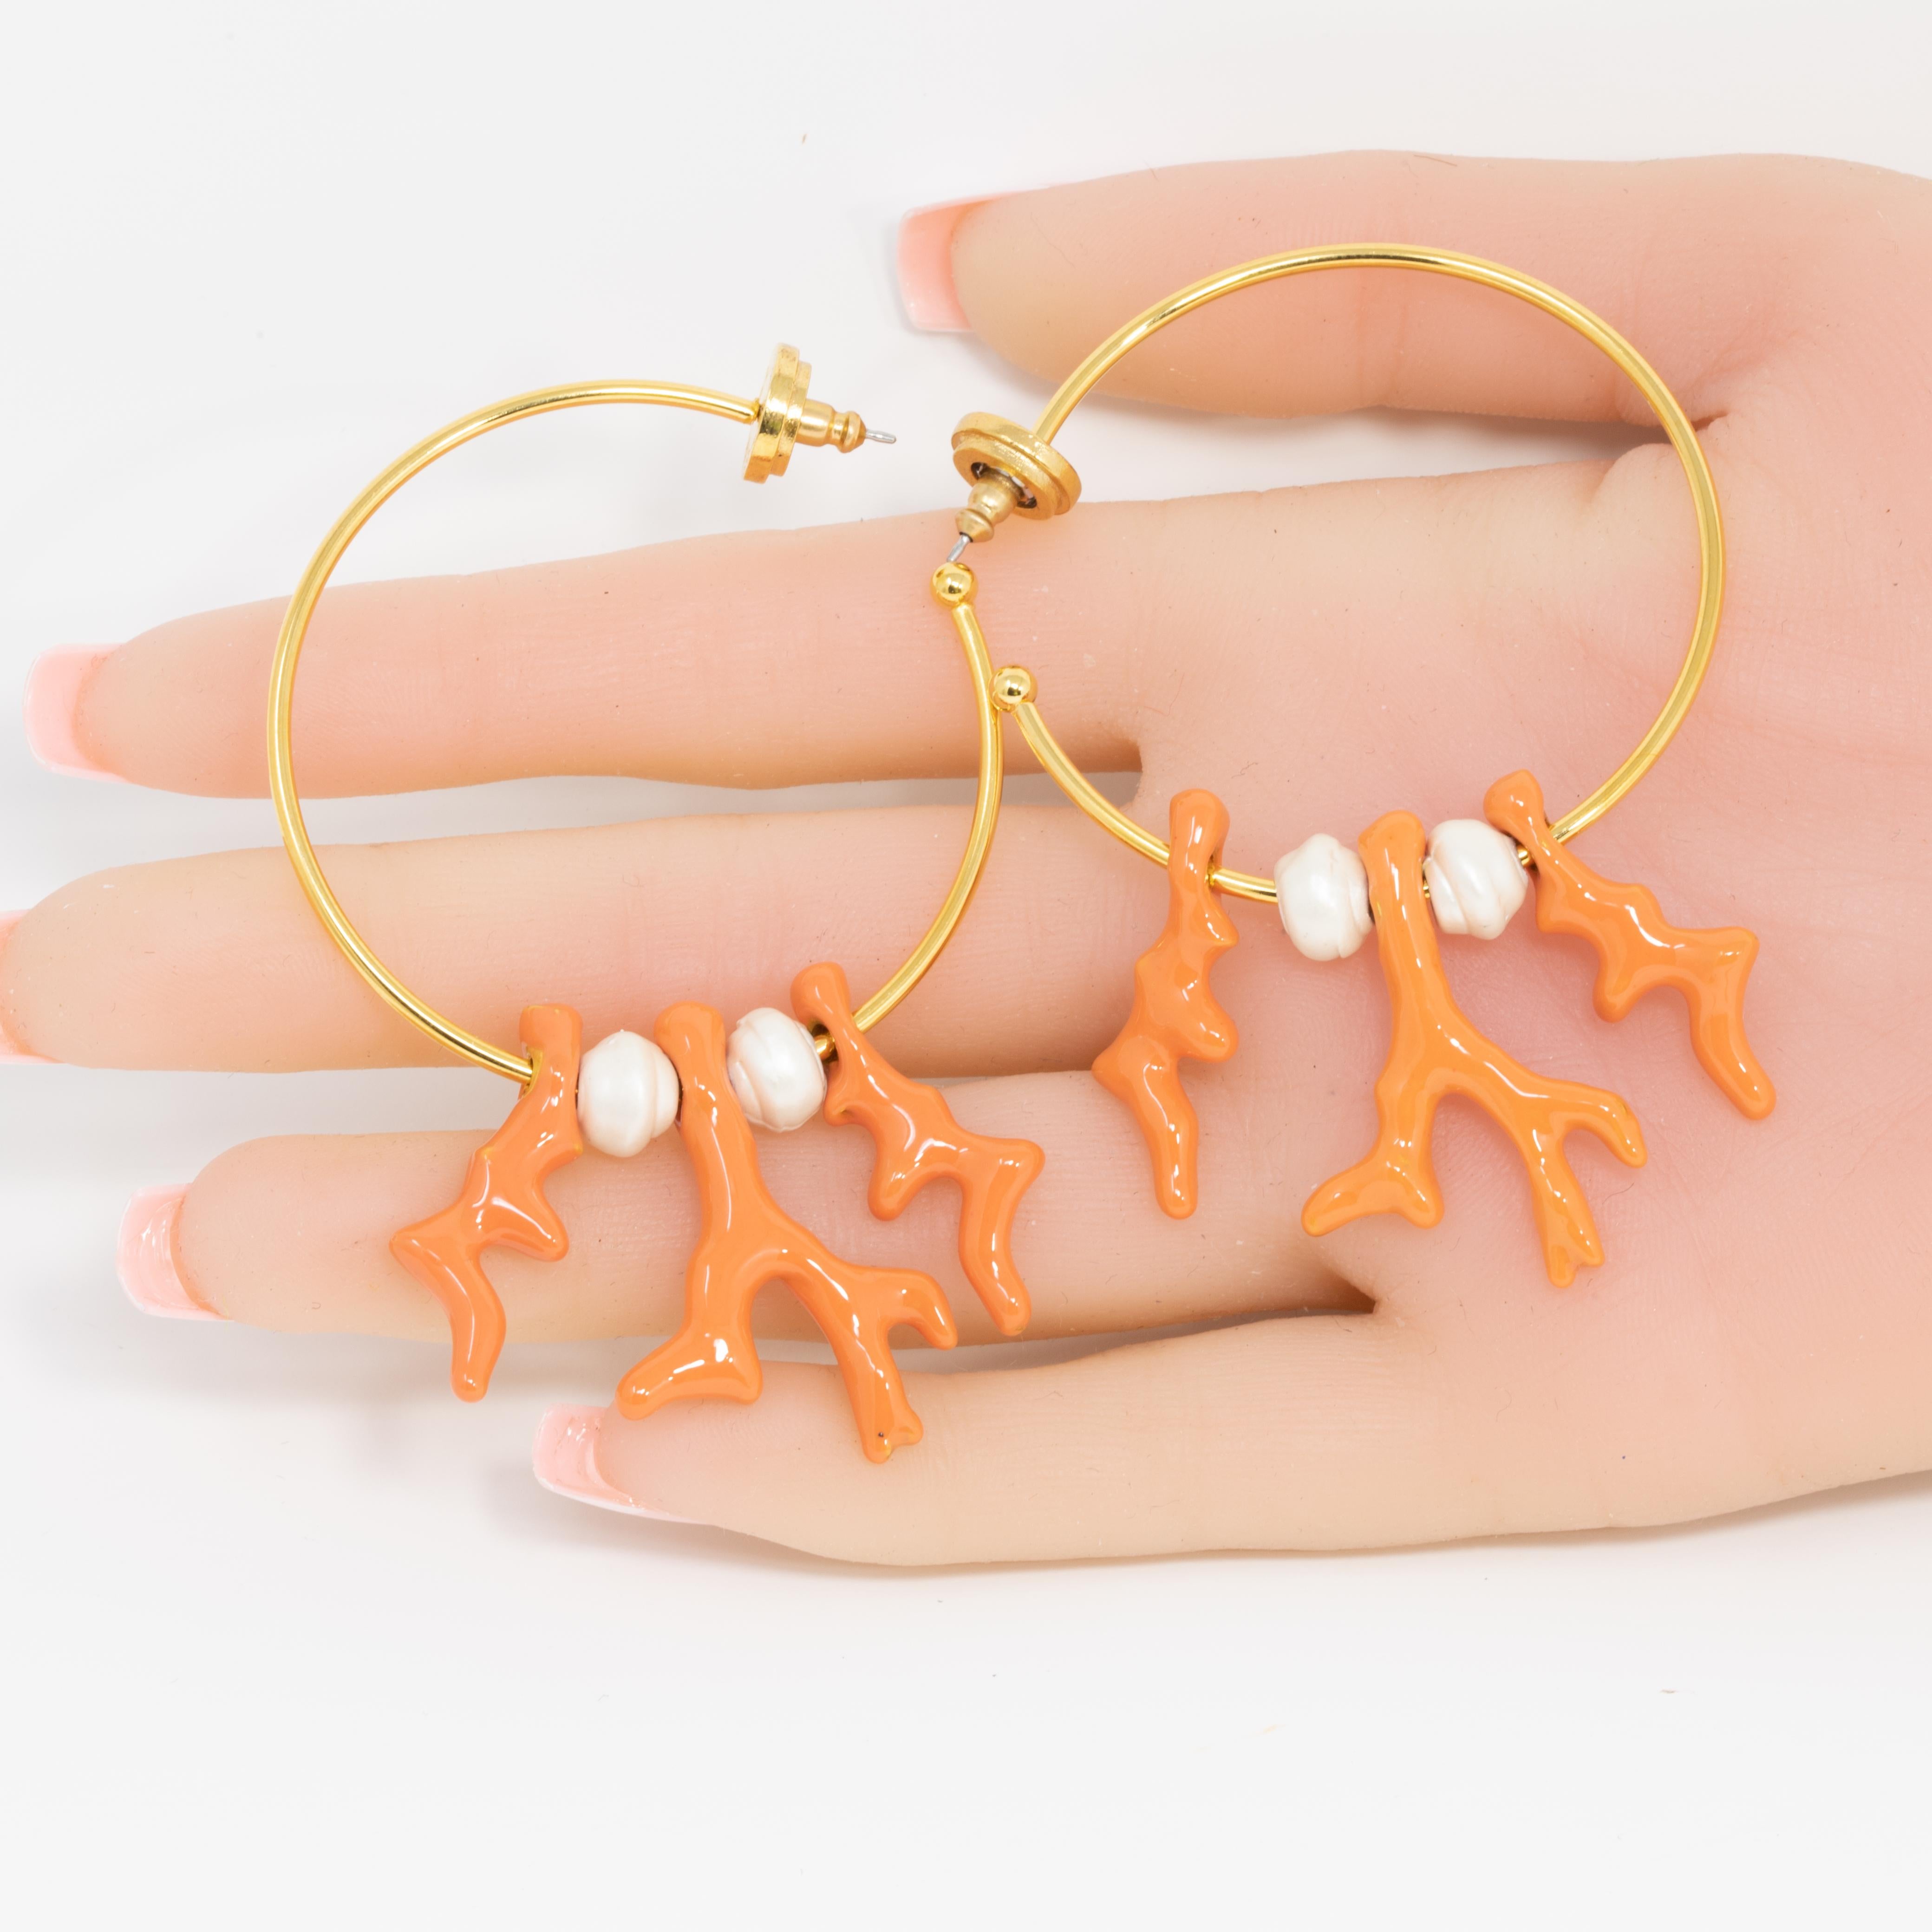 Contemporain Oscar de la Renta, boucles d'oreilles pendantes contemporaines en or, corail et perles en vente